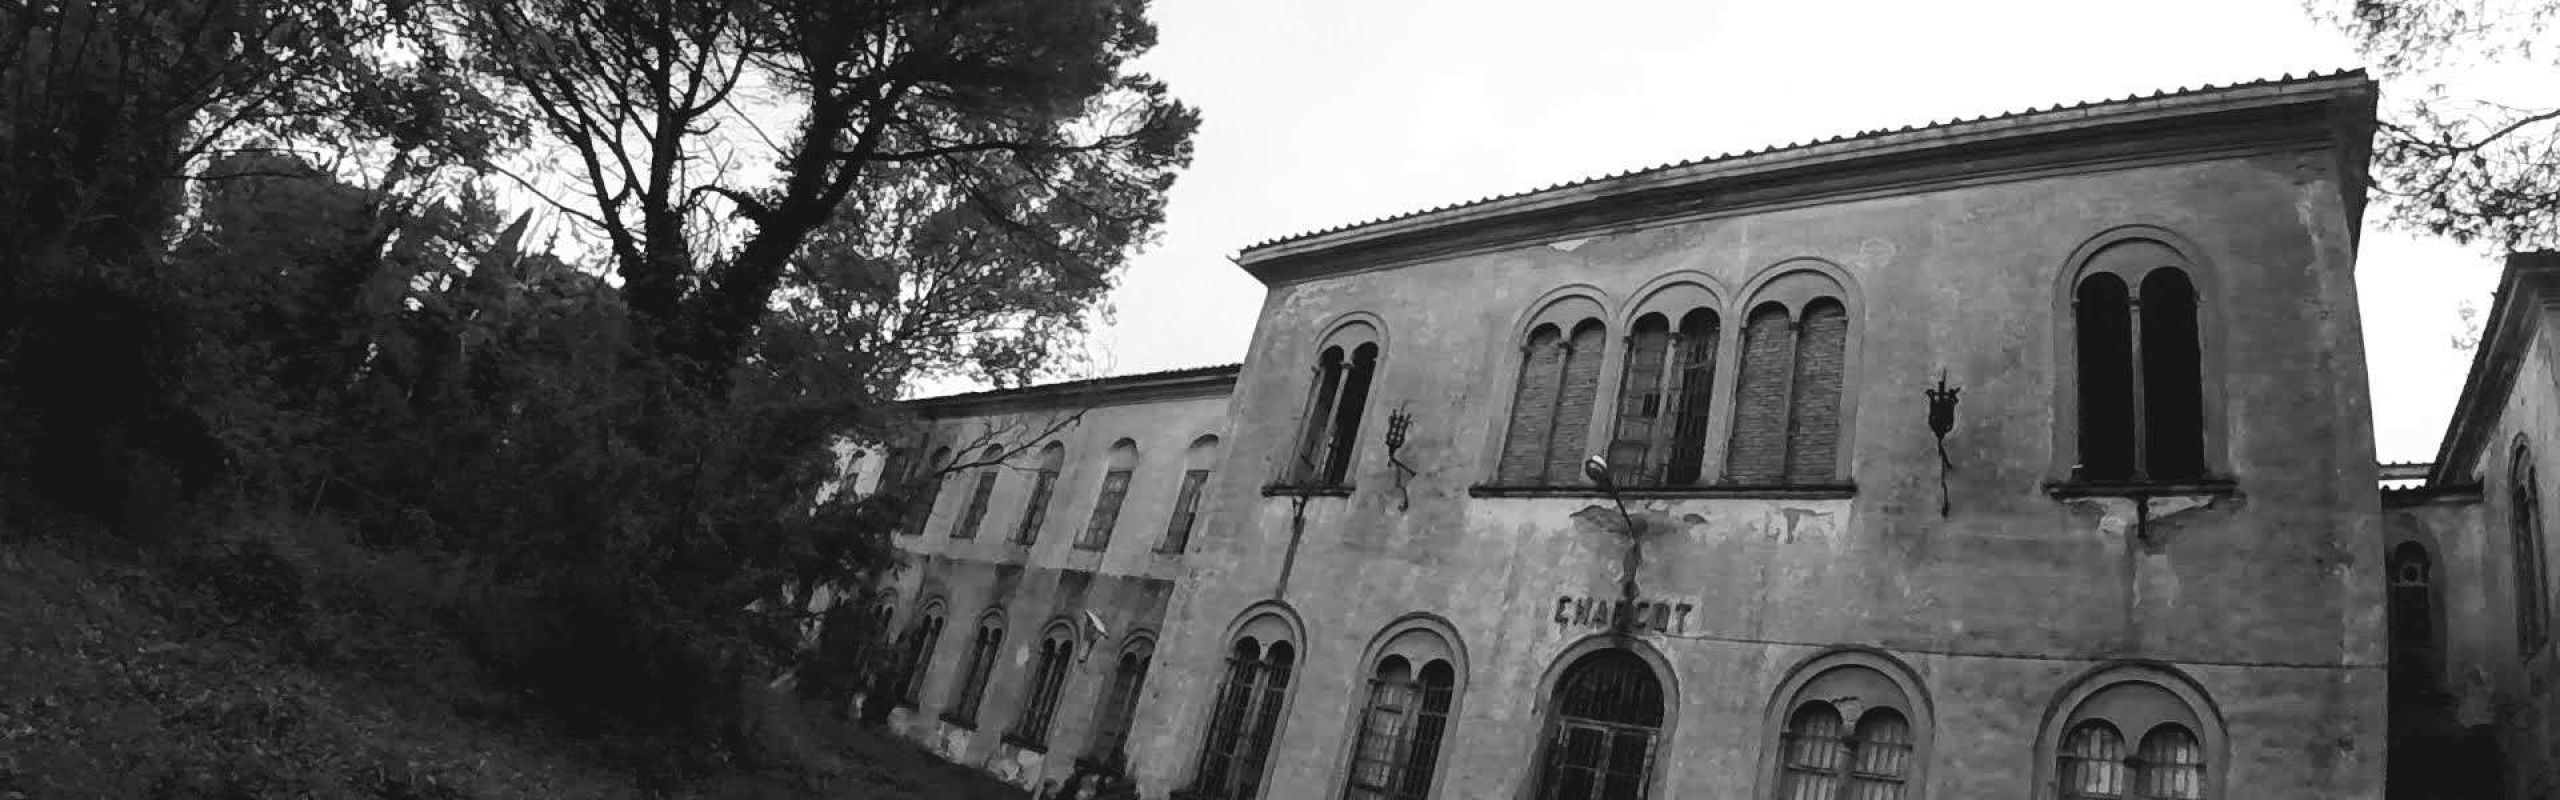 Manicomio di Volterra - Storie e racconti dall’ex ospedale psichiatrico più grande d’italia